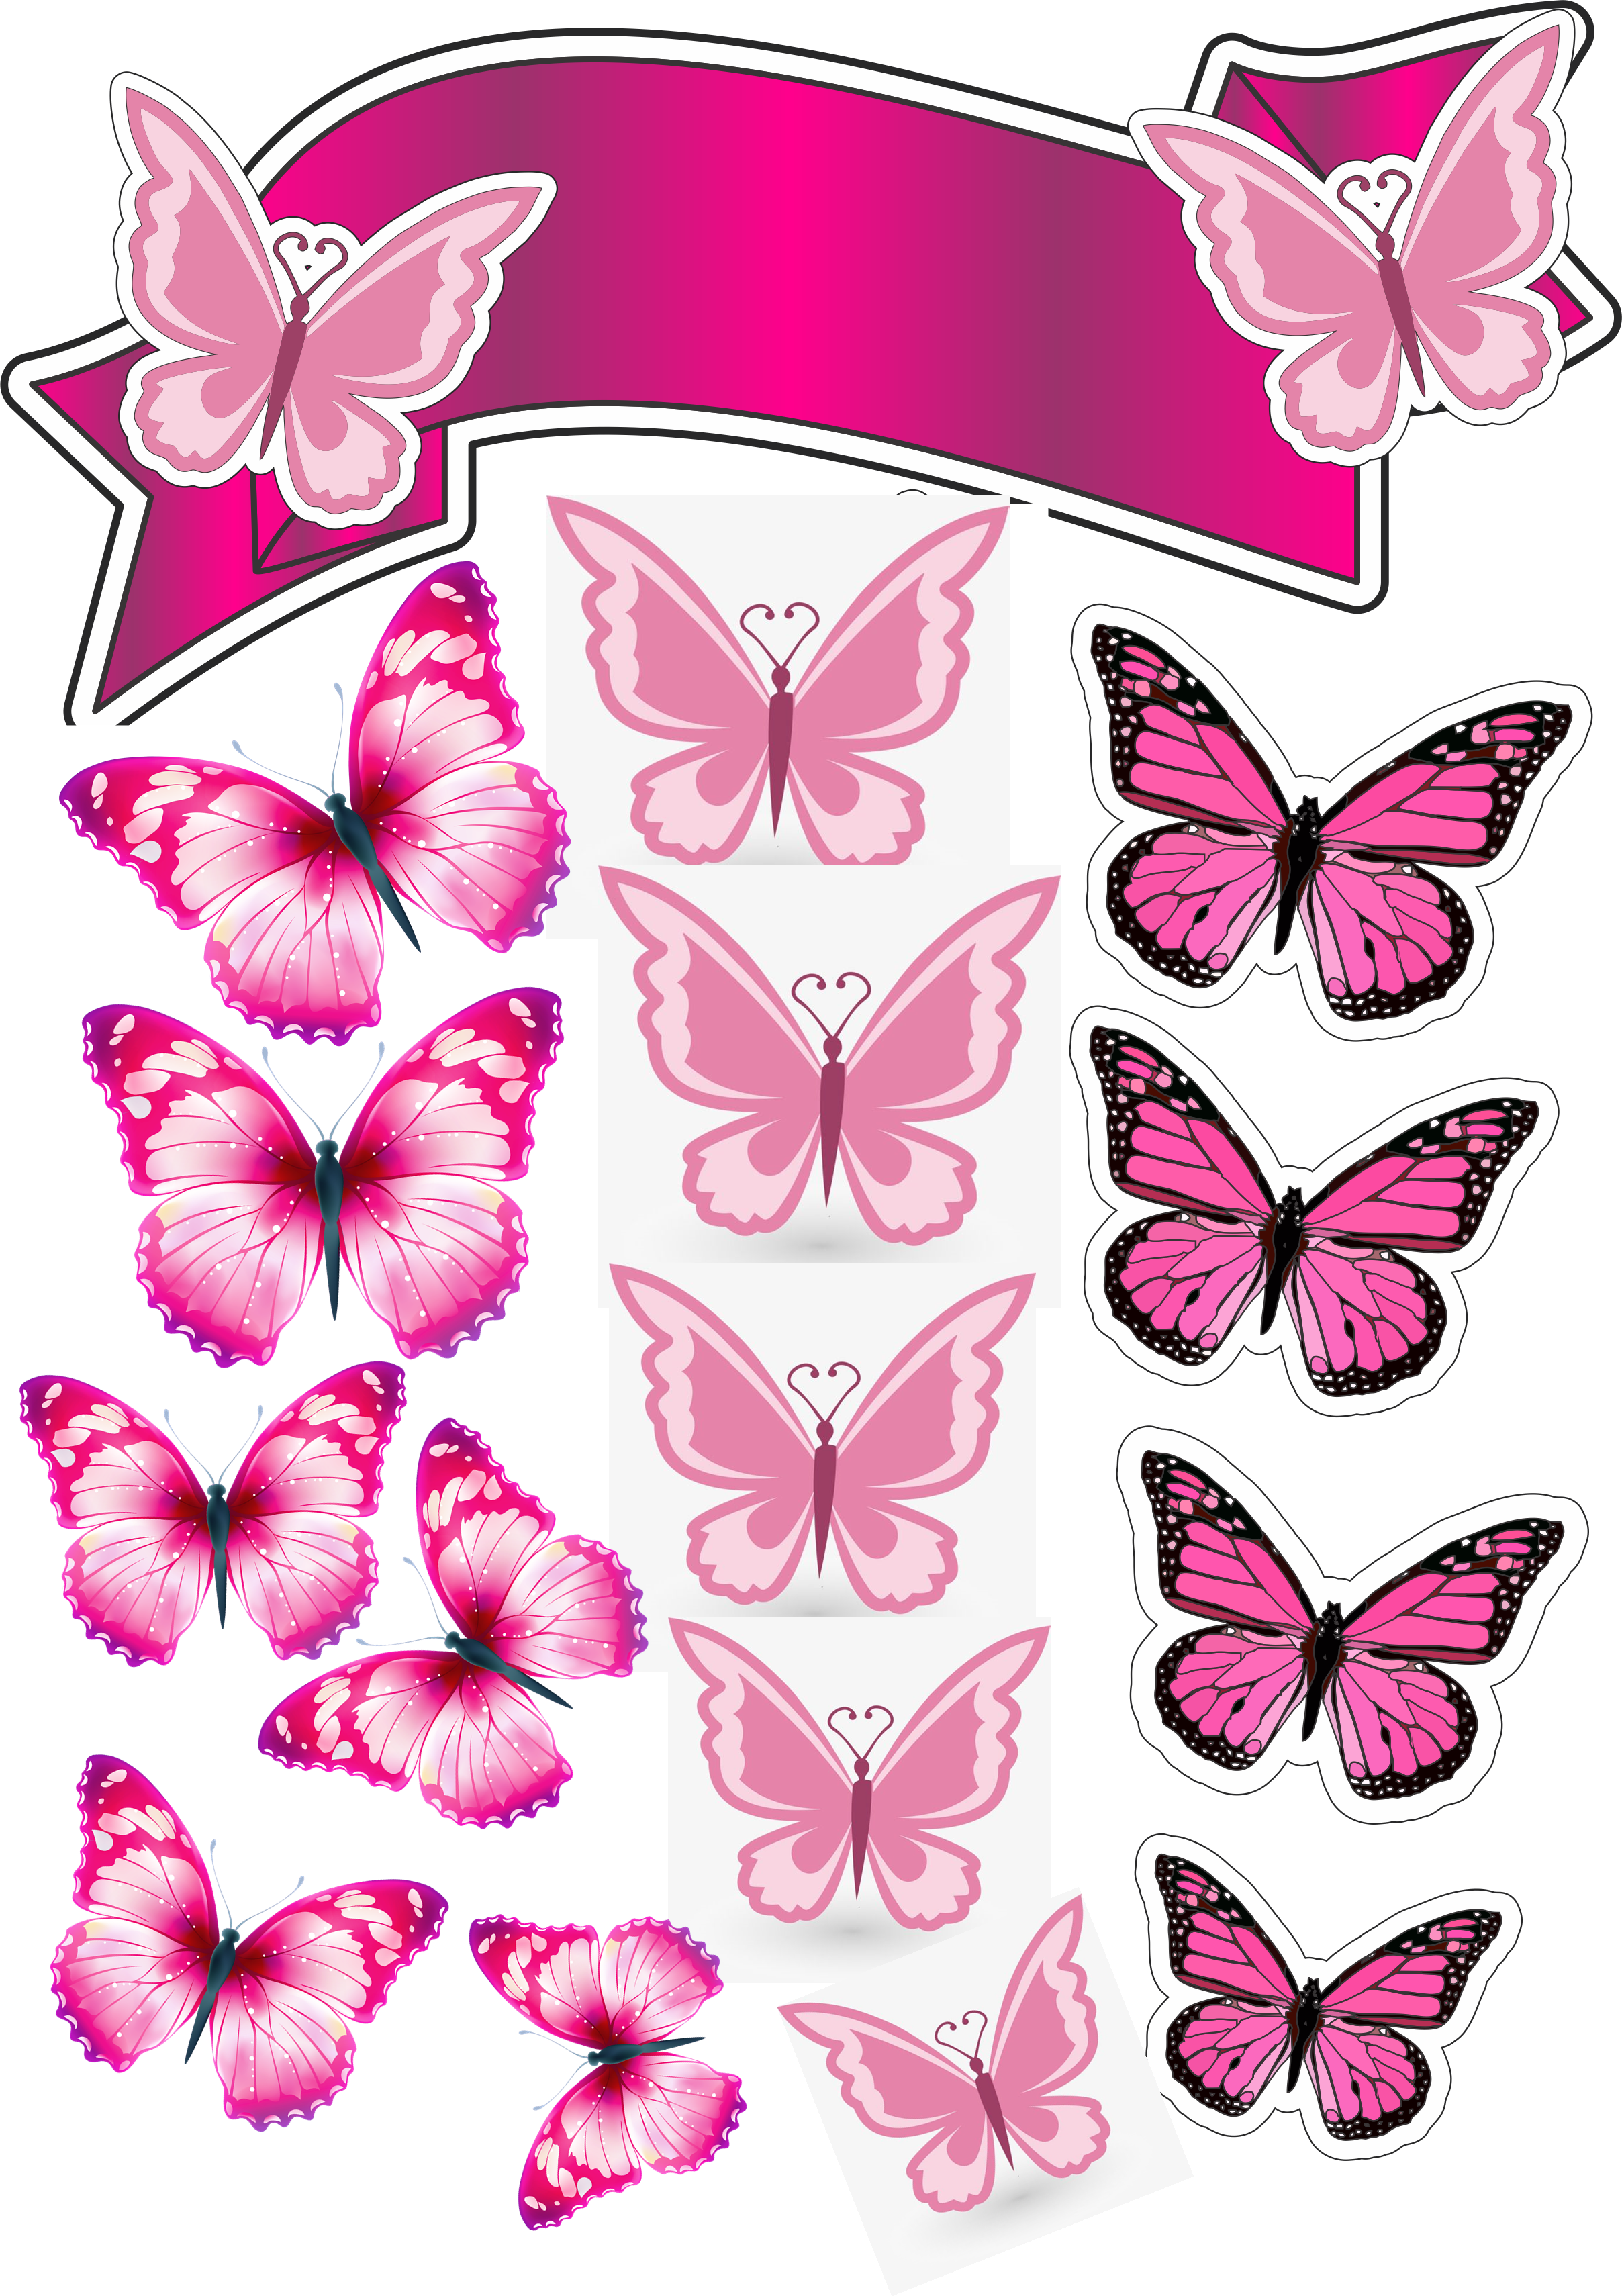 Бабочки розовые распечатать. Торт «бабочки». Розовые бабочки. Бабочки шаблон для печати на торт. Бабочки для печати.